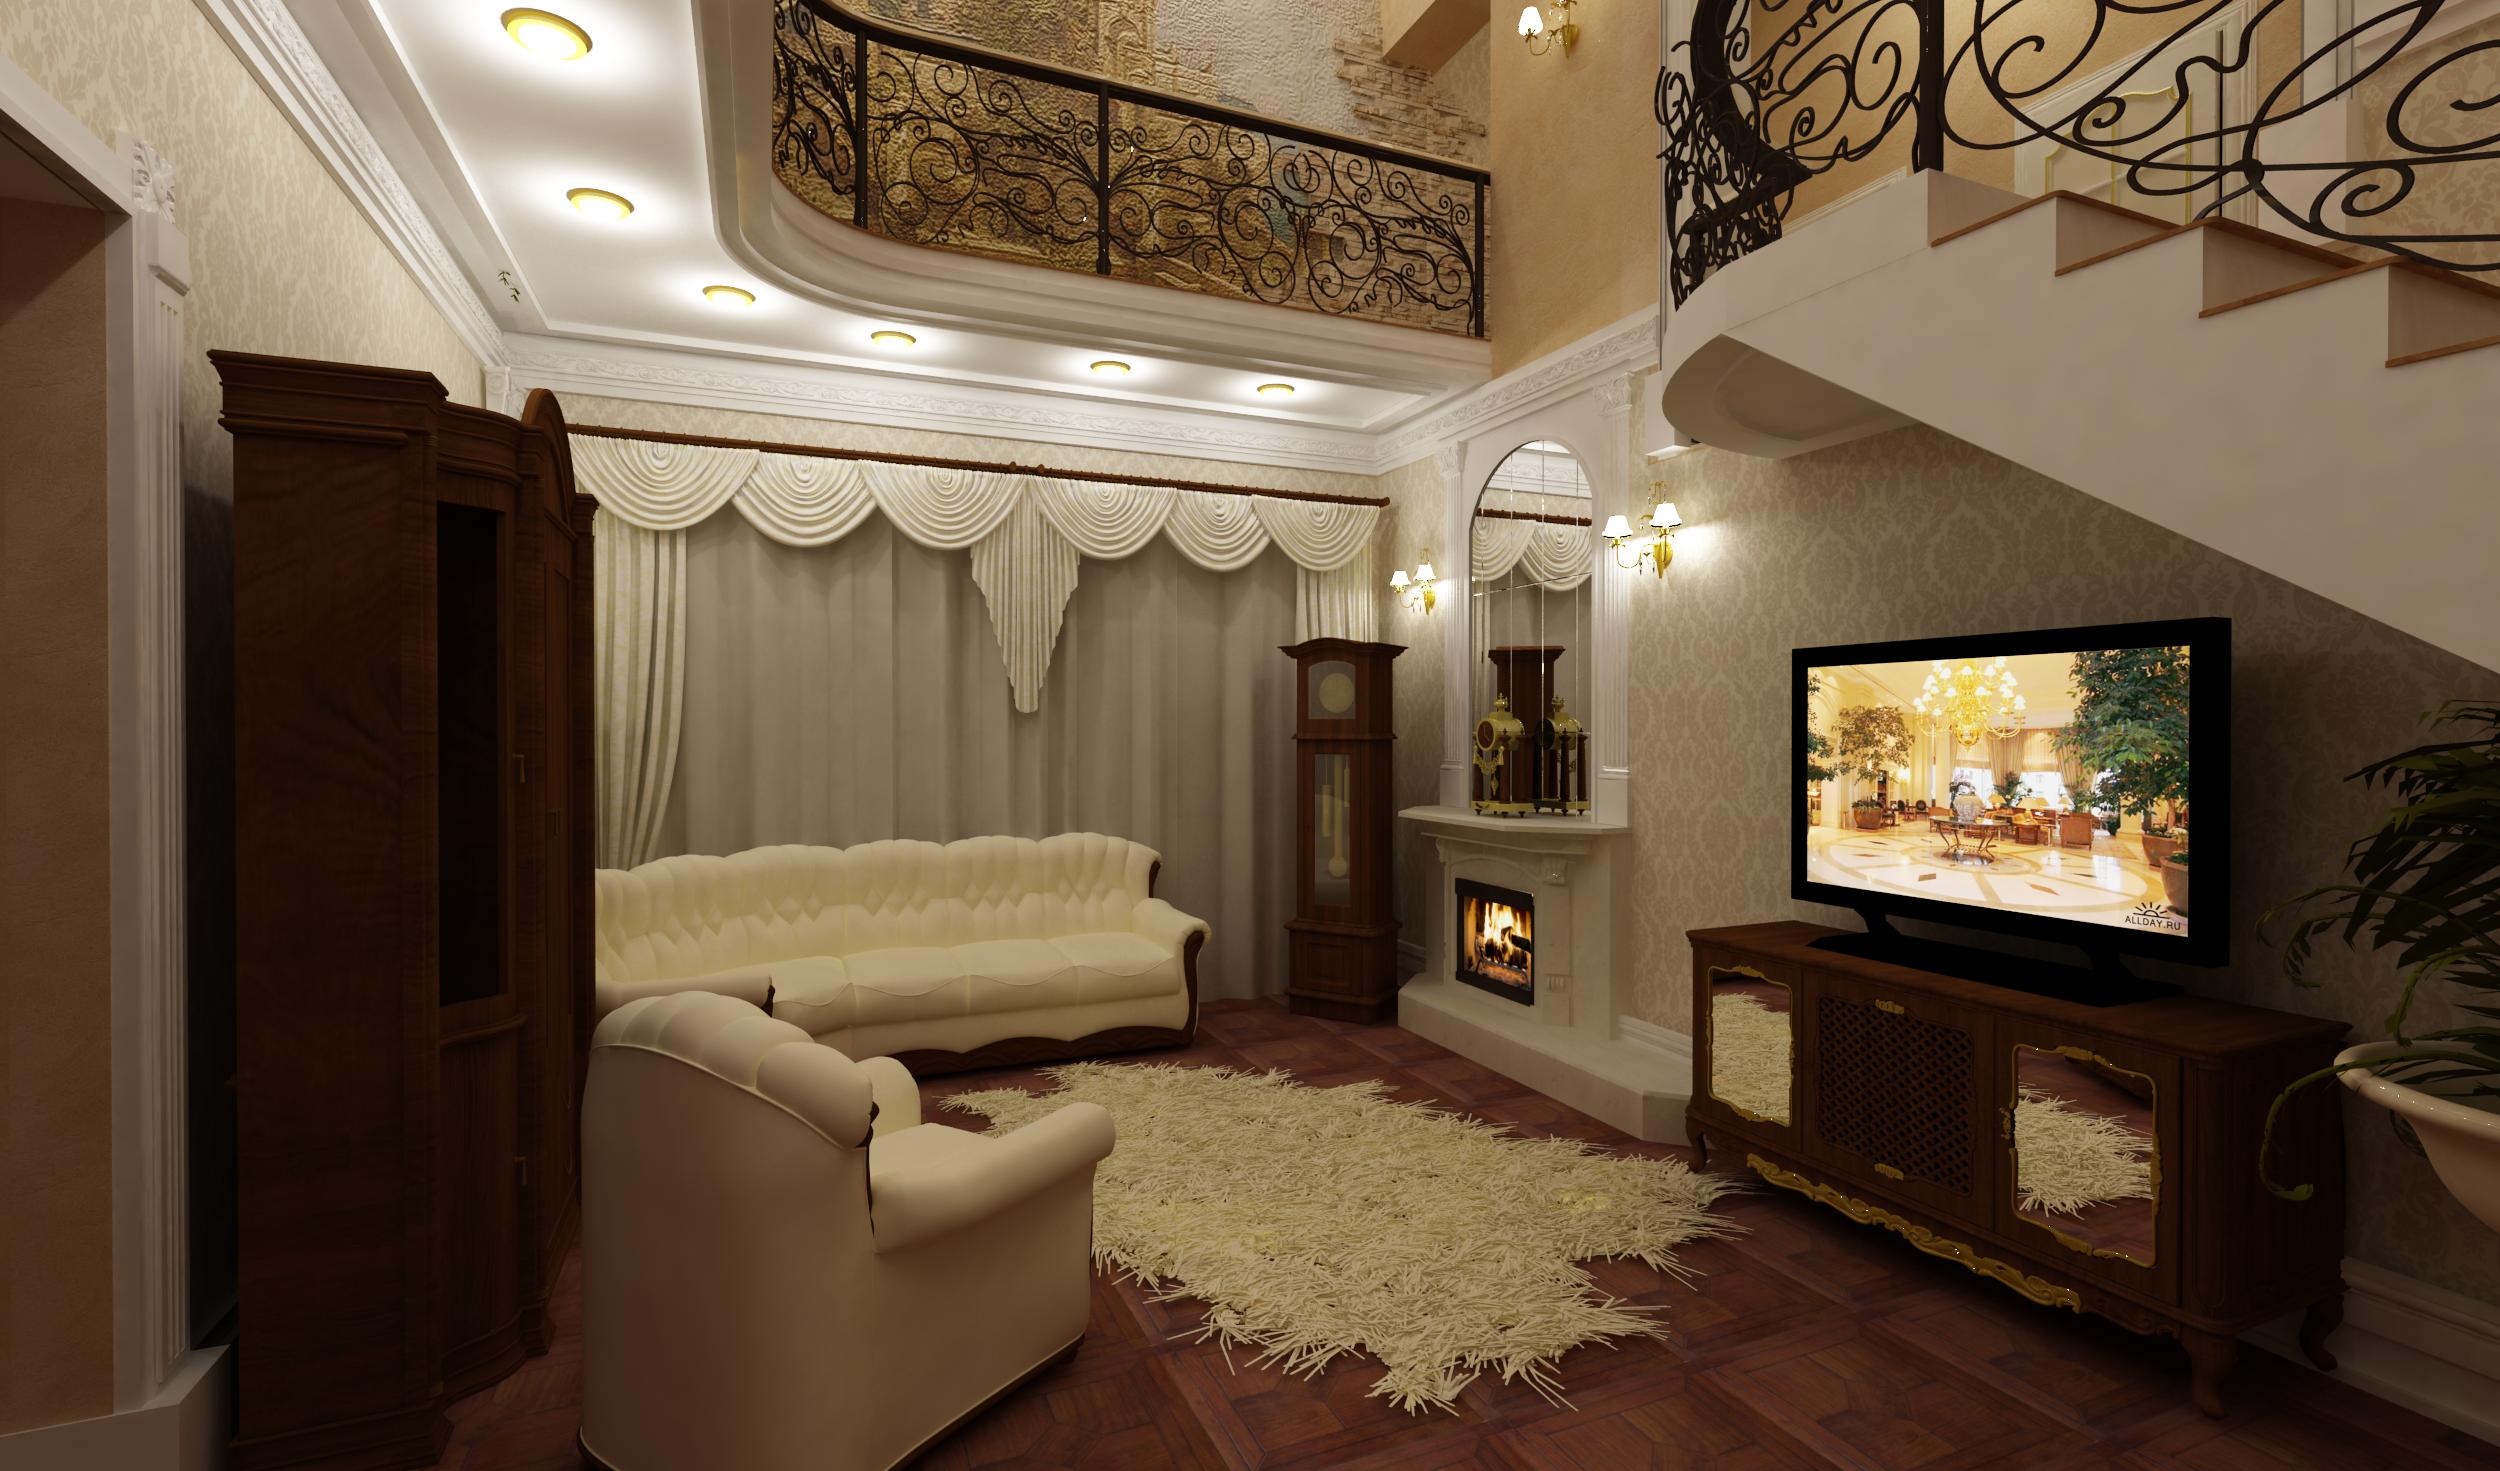 Дизайн интерьера зала в частном доме » Современный дизайн на Vip-1gl